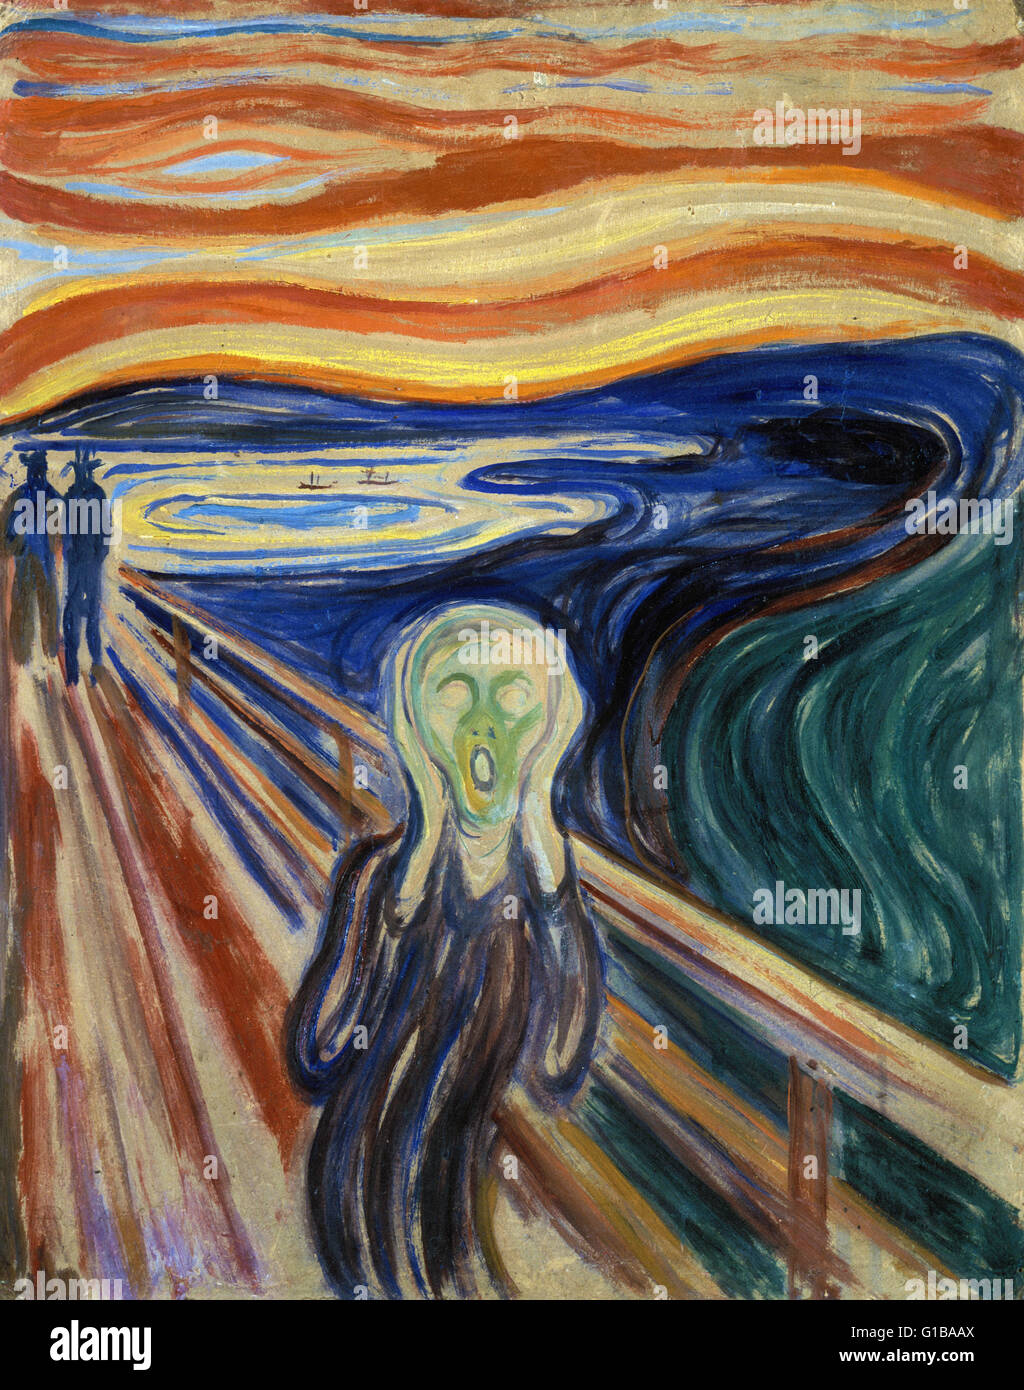 Edvard Munch - The Scream - The Munch Museum, Oslo Stock Photo